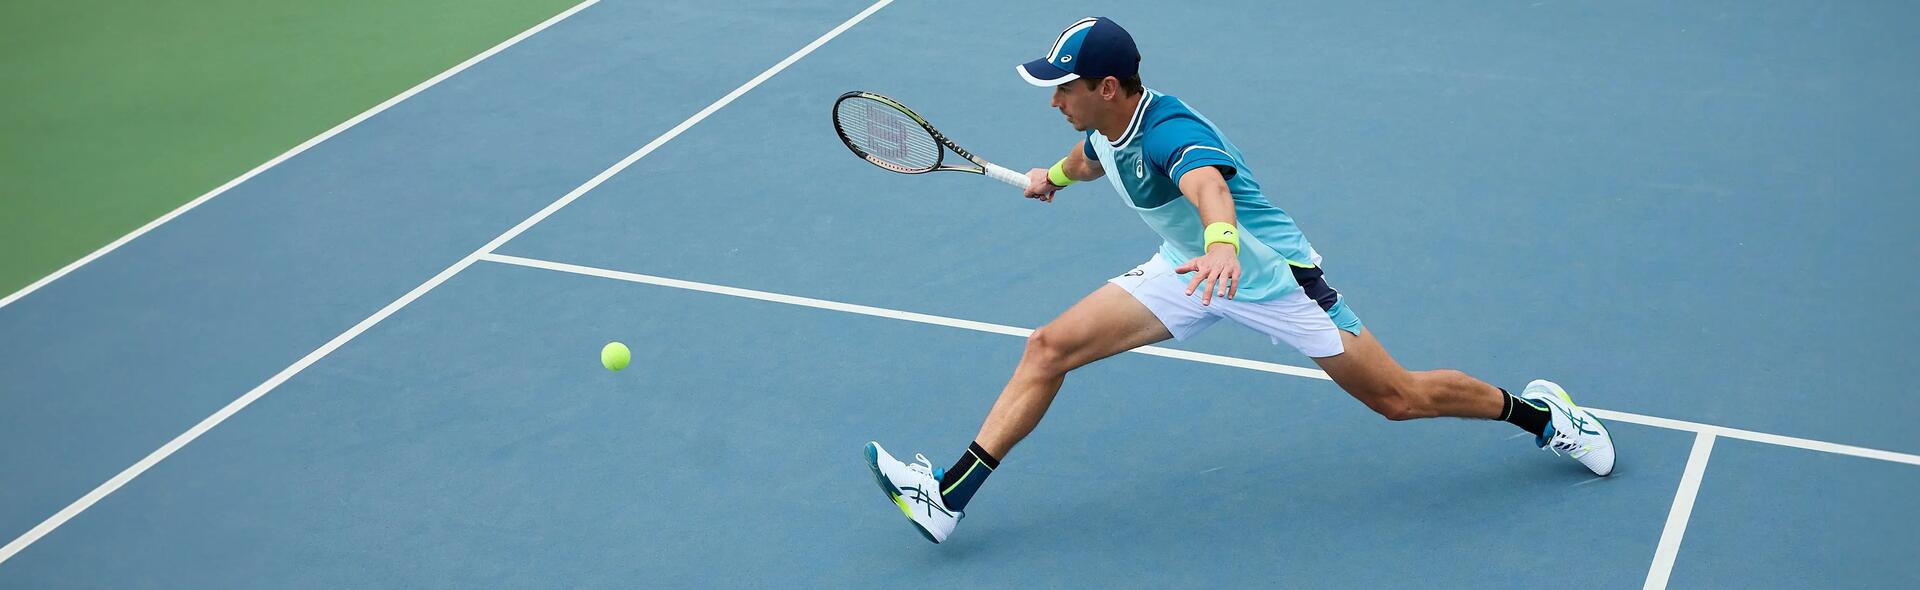 Mężczyzna grający w tenisa w butach do tenisa